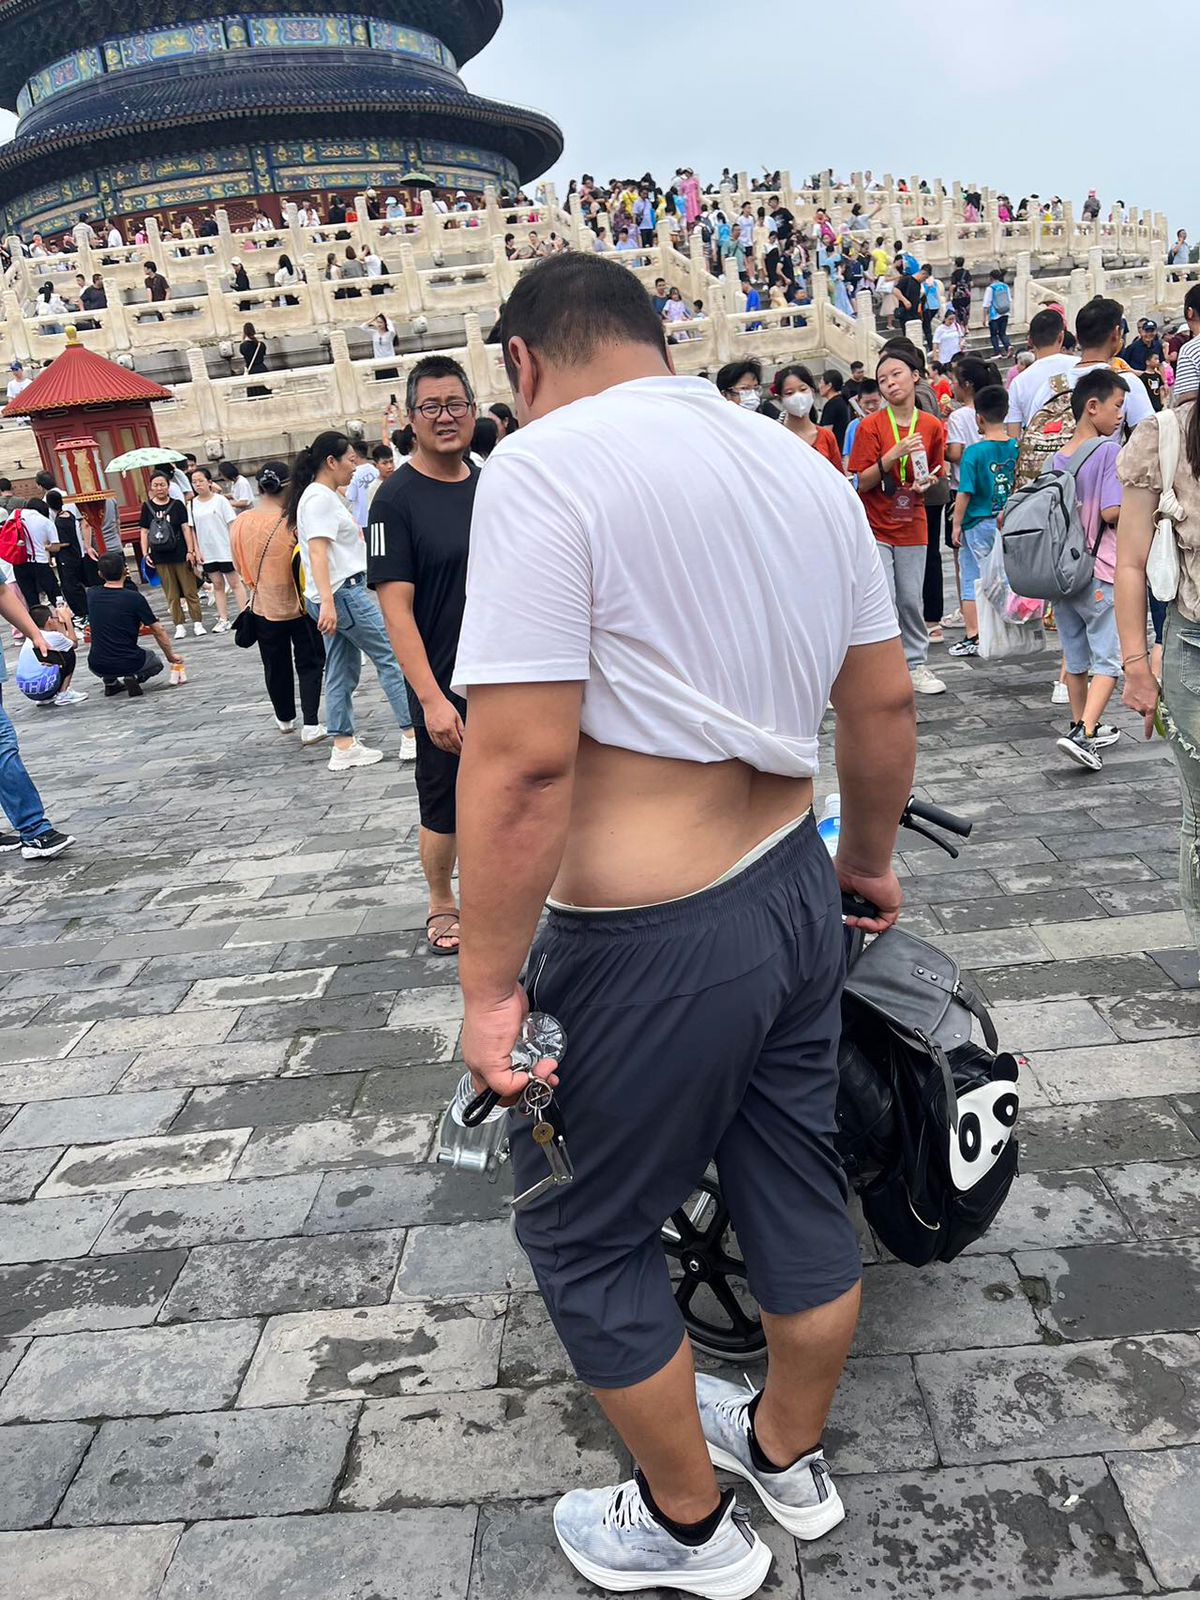 عادة غريبة في شوارع الصين